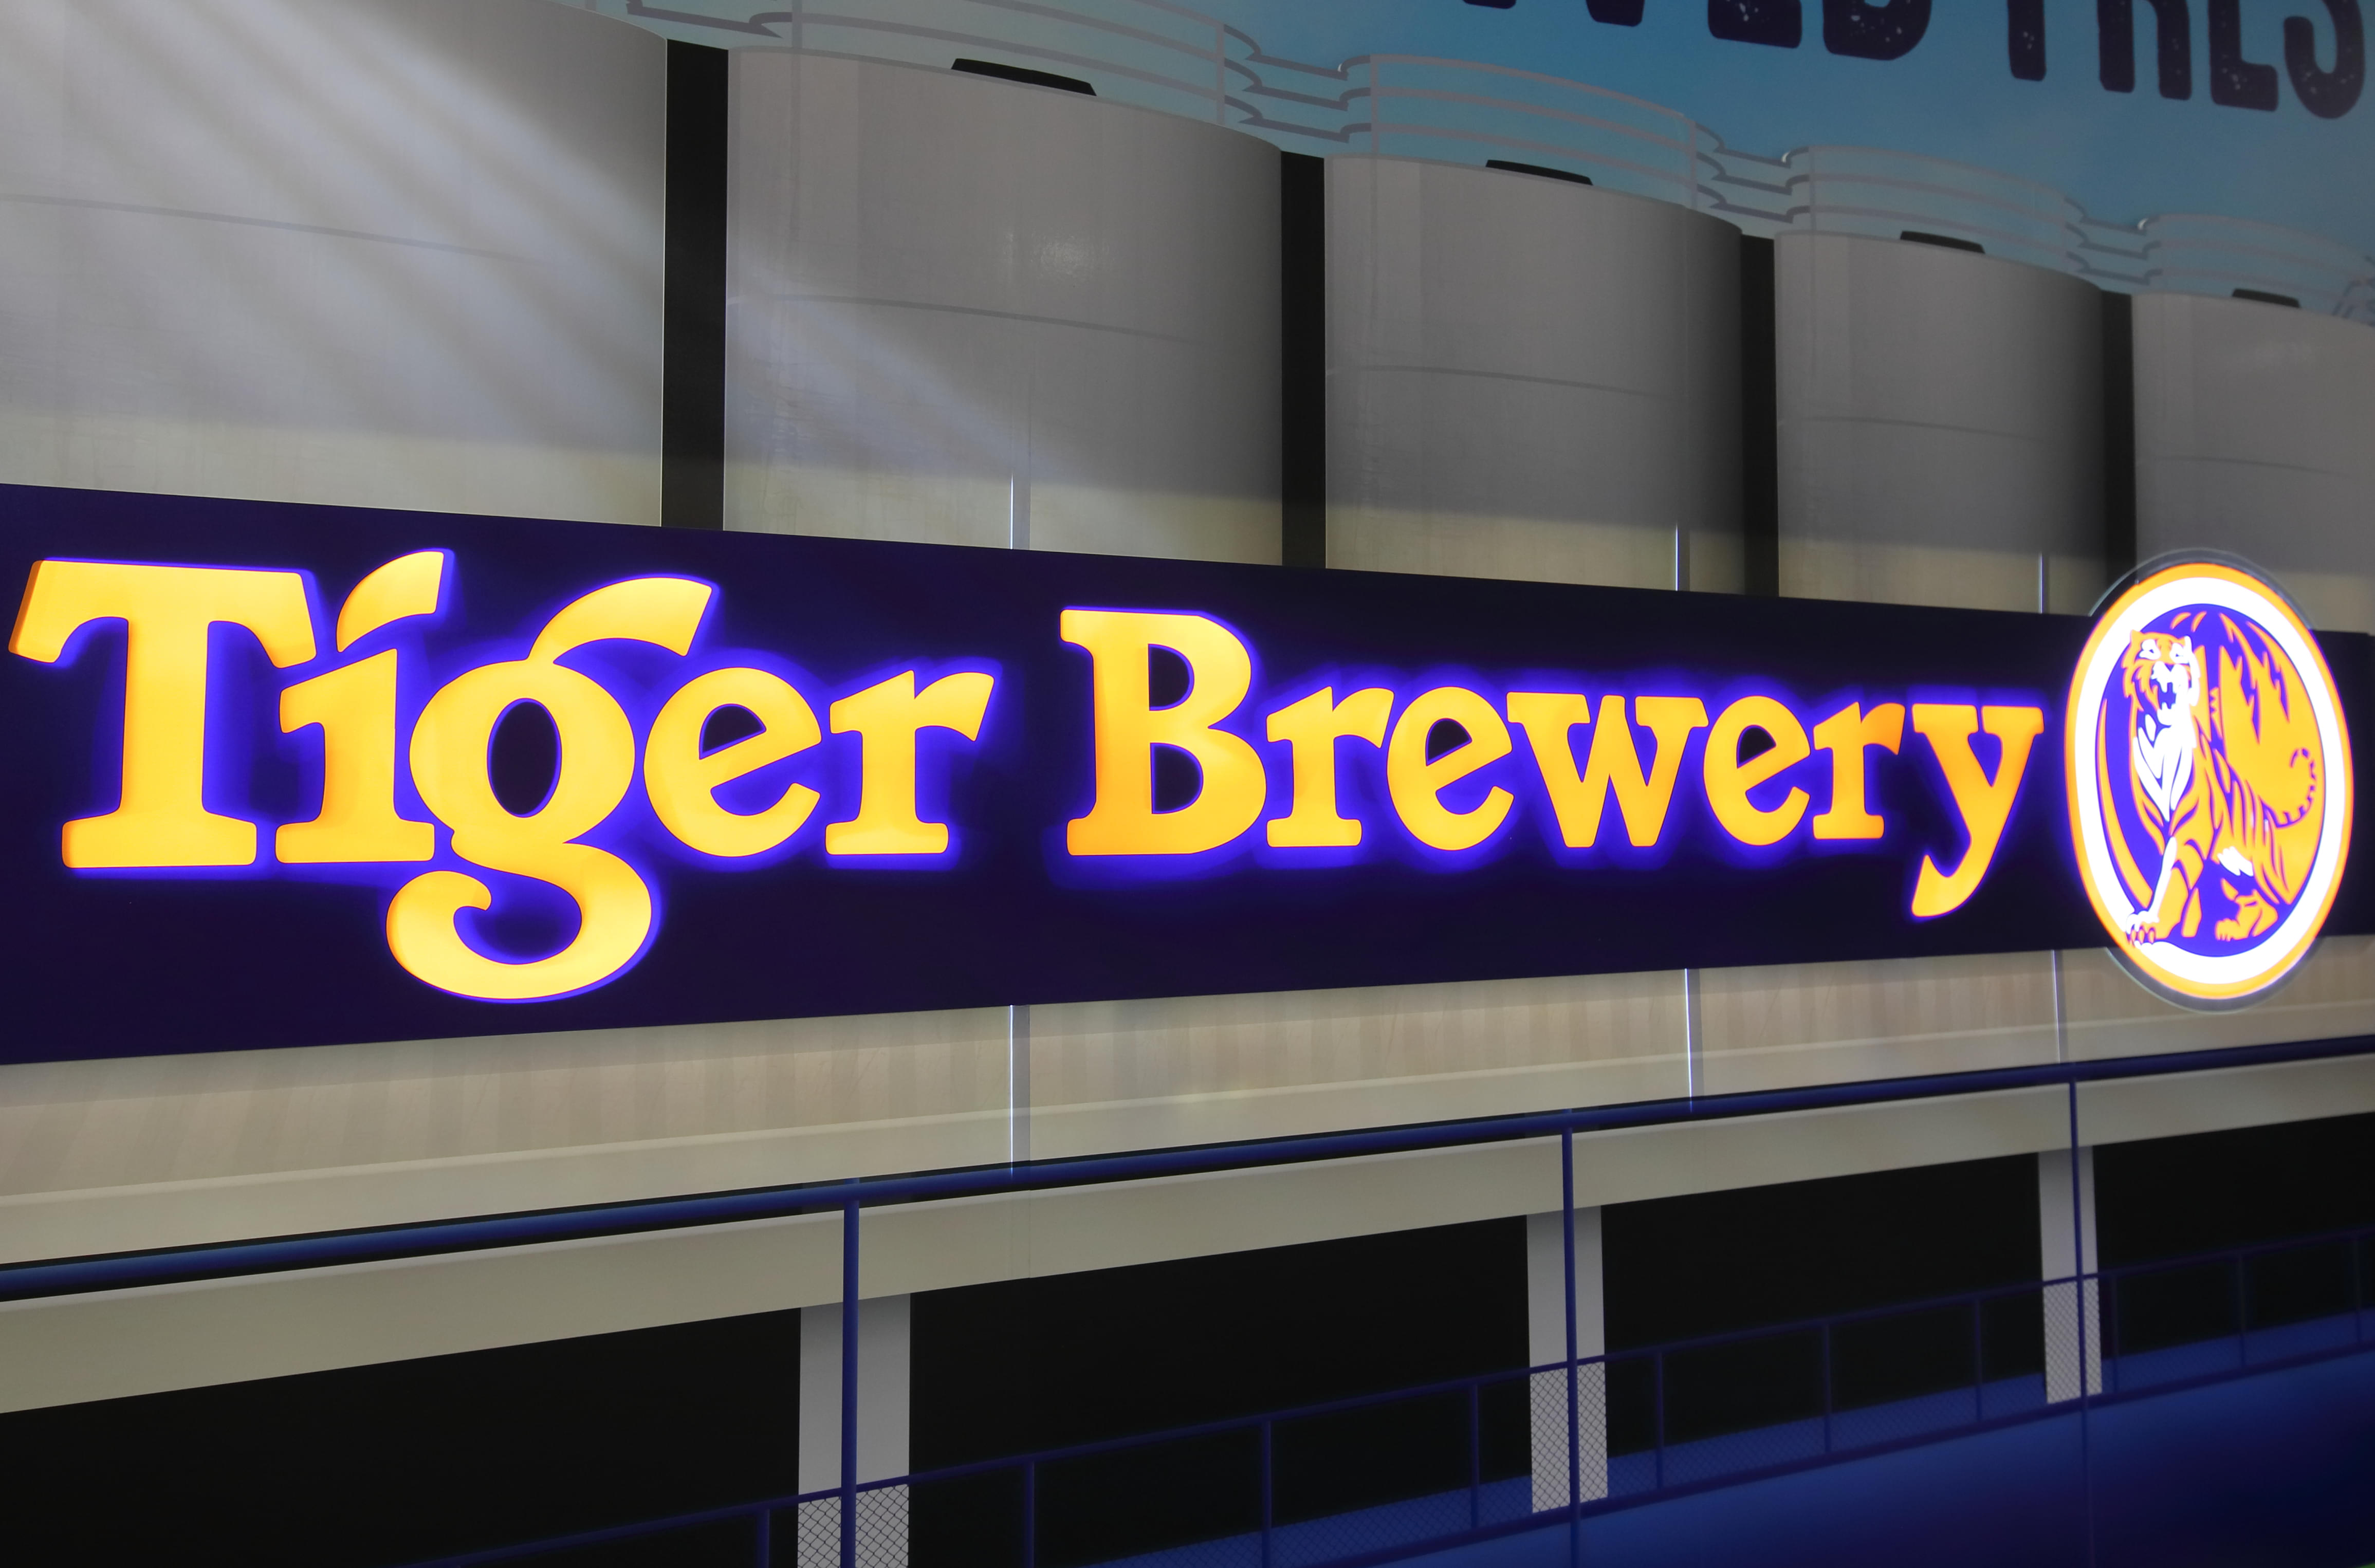 singapore brewery tour